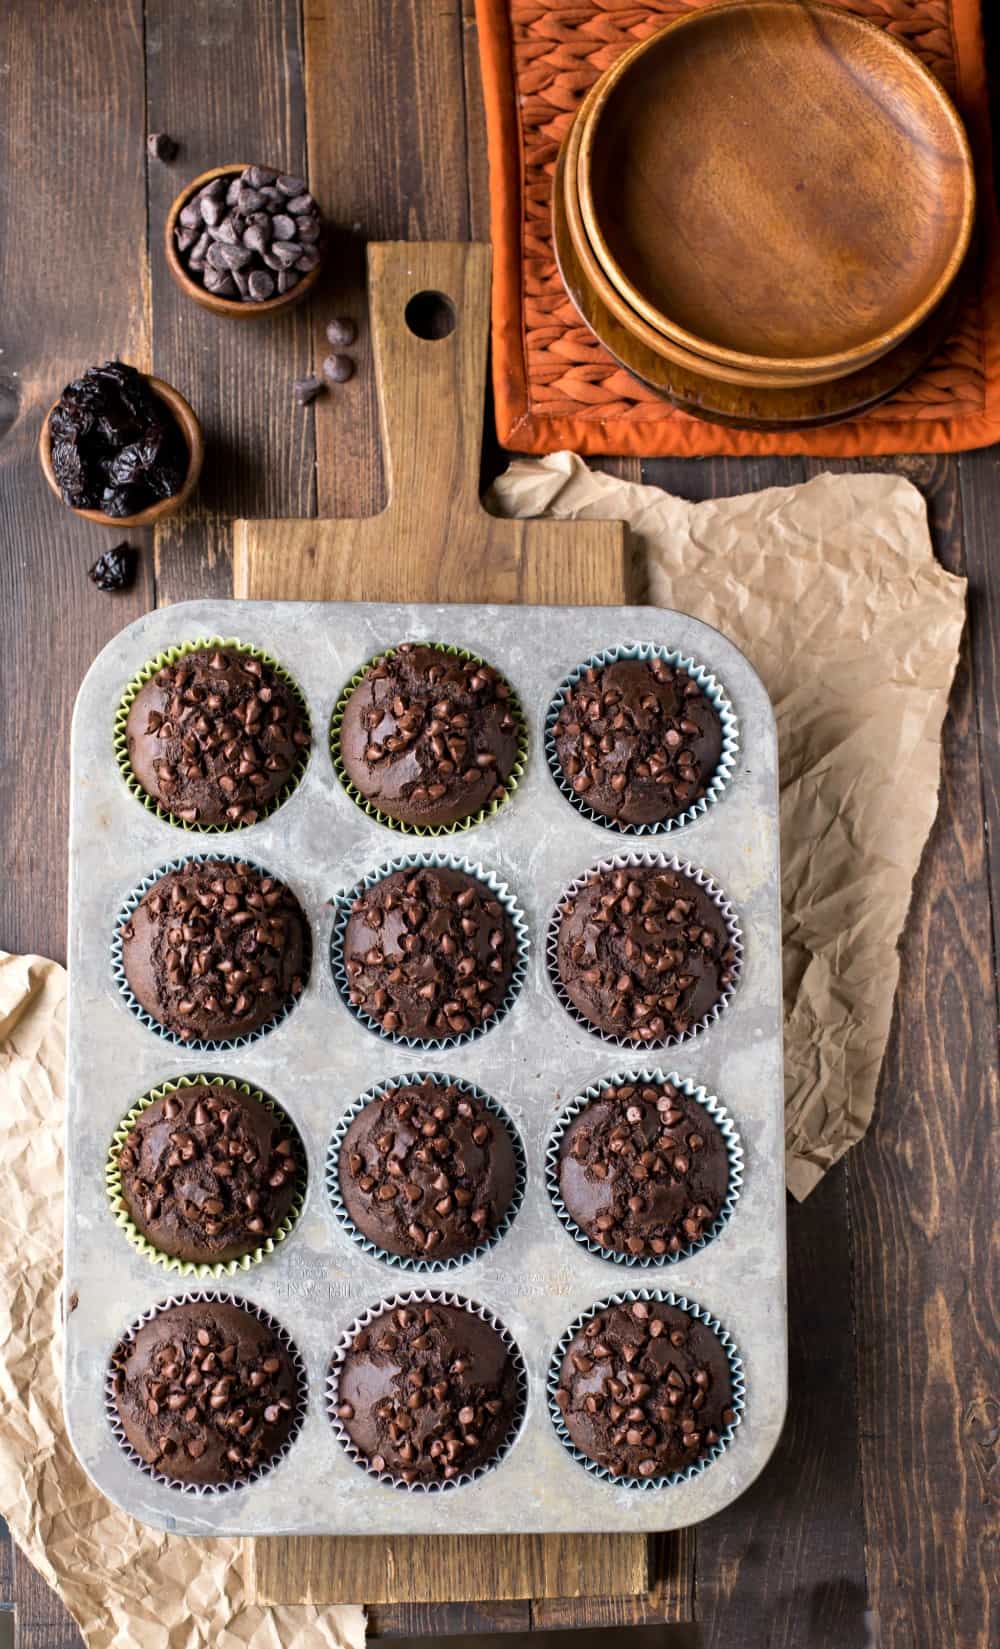 Chocolate Chocolate Cherry Muffins